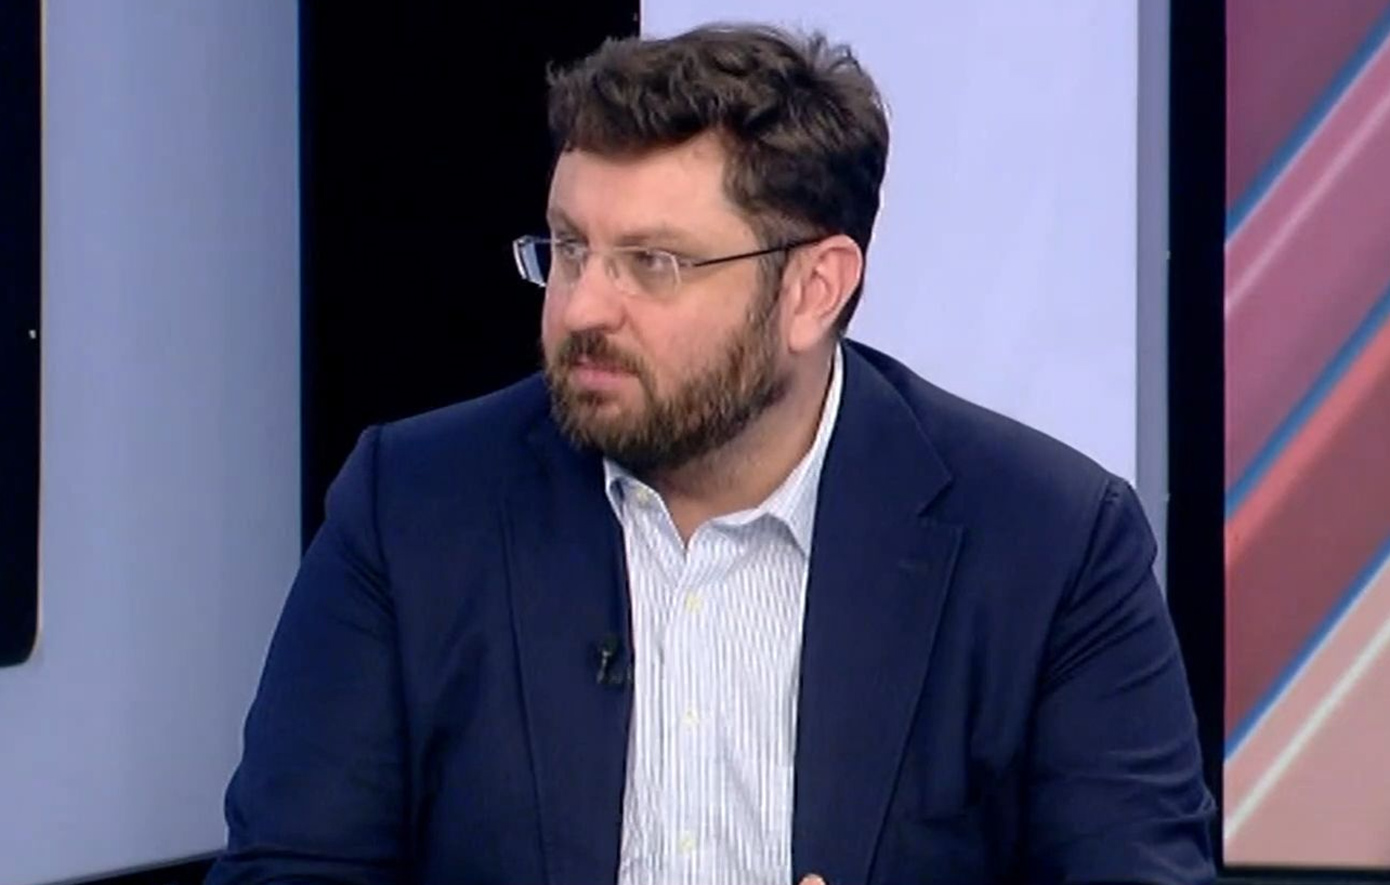 Κριτική Ζαχαριάδη κατά Σπηλιωτόπουλου: Δεν έχει θεσμικό ρόλο, ούτε είναι στέλεχος του κόμματος